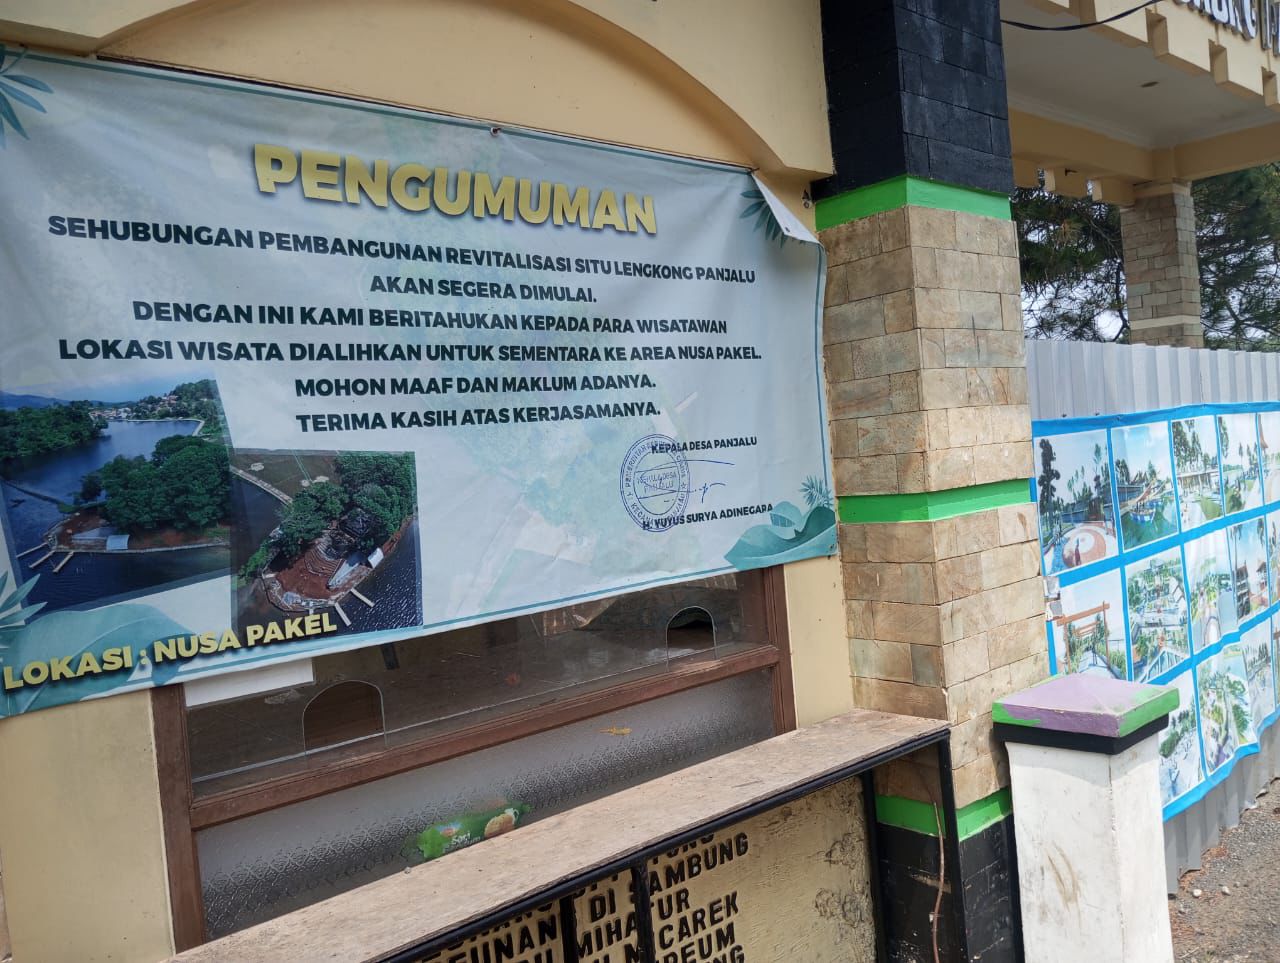 Pintu masuk wisata Situ Lengkong Panjalu di Kabupaten Ciamis masih ditutup. Lokasi ini belum dibuka lantaran pekerjaan revitalisasi yang molor dari target waktu pekerjaan. (Cecep Herdi/Jabar Ekspres)